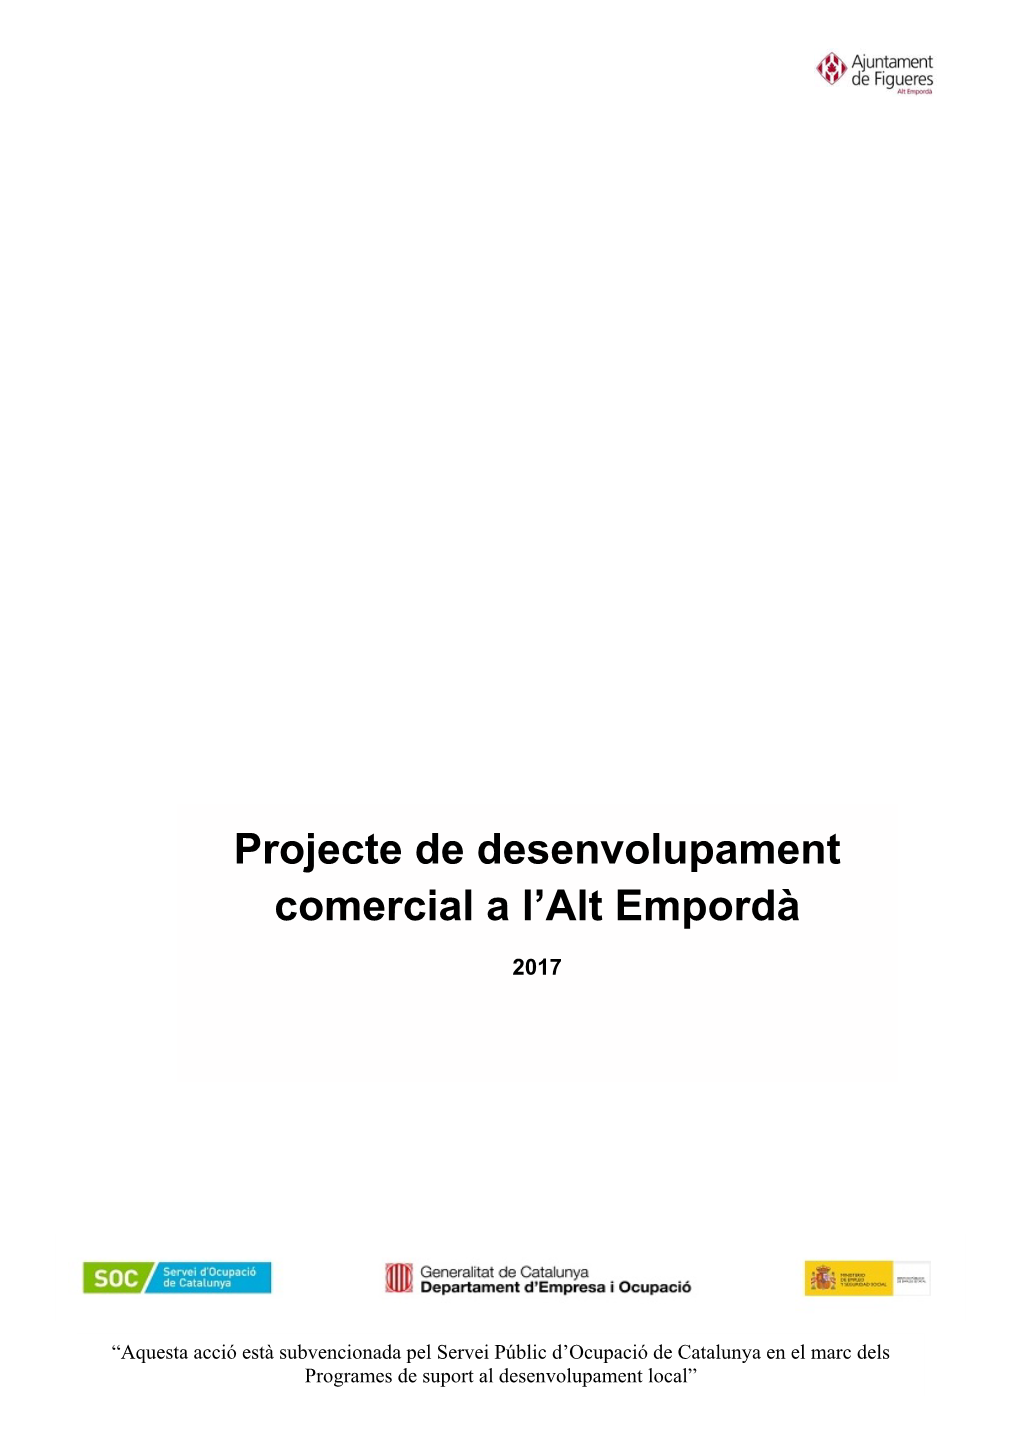 Projecte De Desenvolupament Comercial a L'alt Empordà